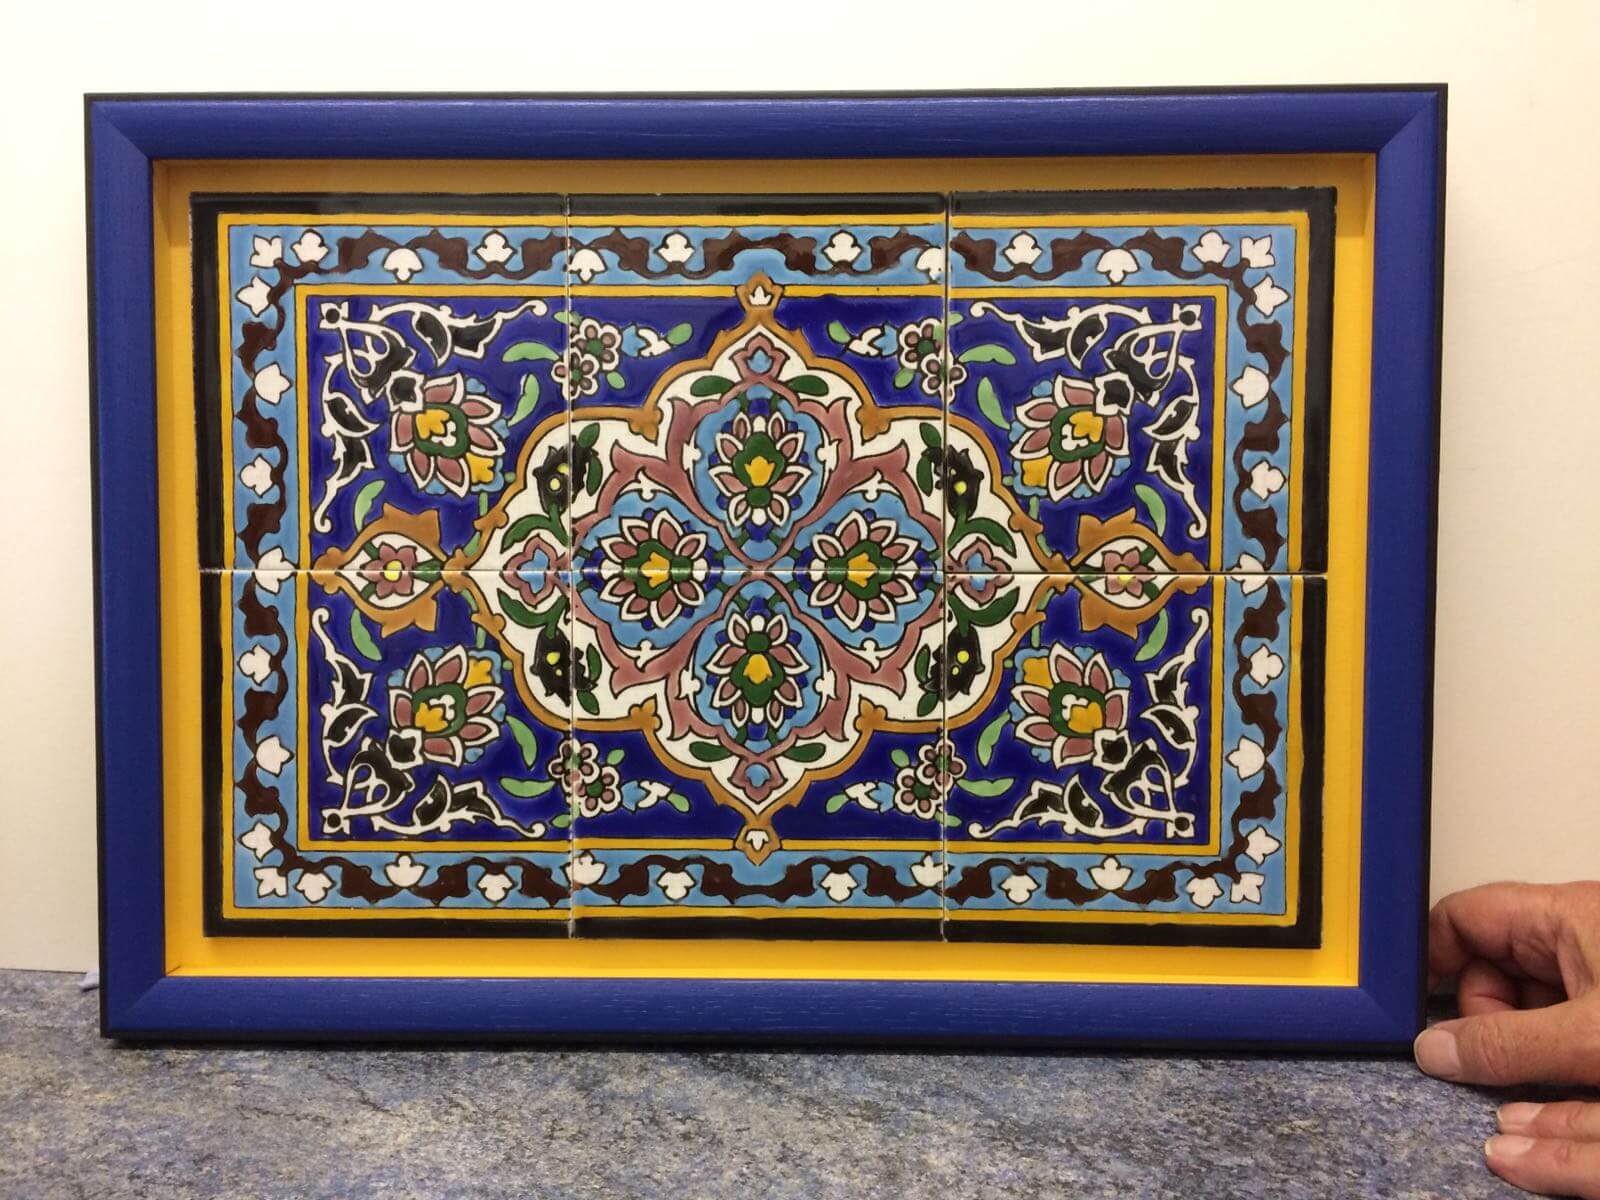 Iranian mosaic tiles